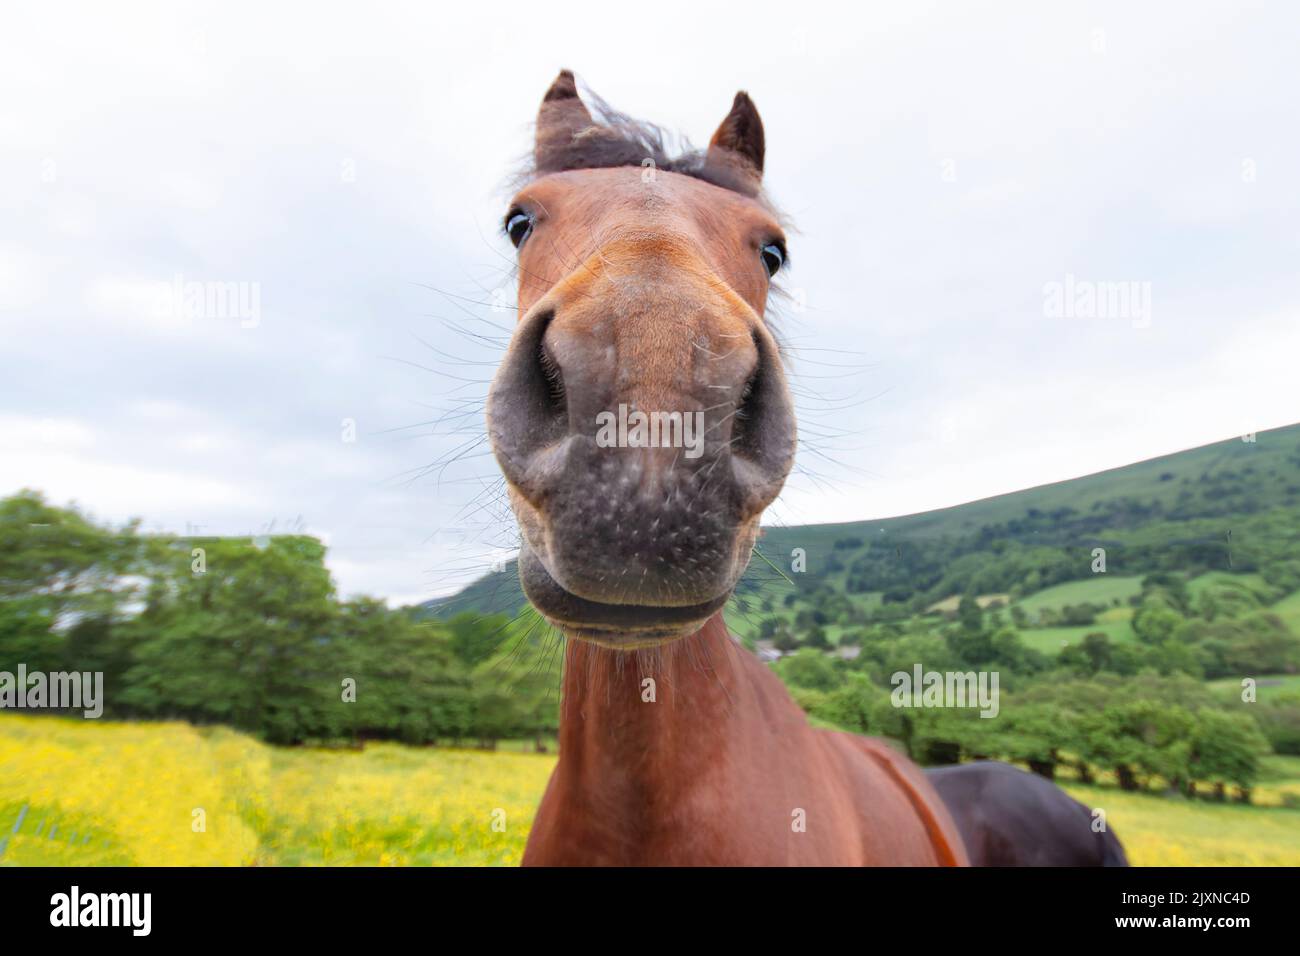 Une image de gros plan d'un sympathique cheval curieux dans la campagne. L'image montre le cheval de châtaignier, tête en regardant directement dans l'appareil photo. Pays de Galles Royaume-Uni Banque D'Images